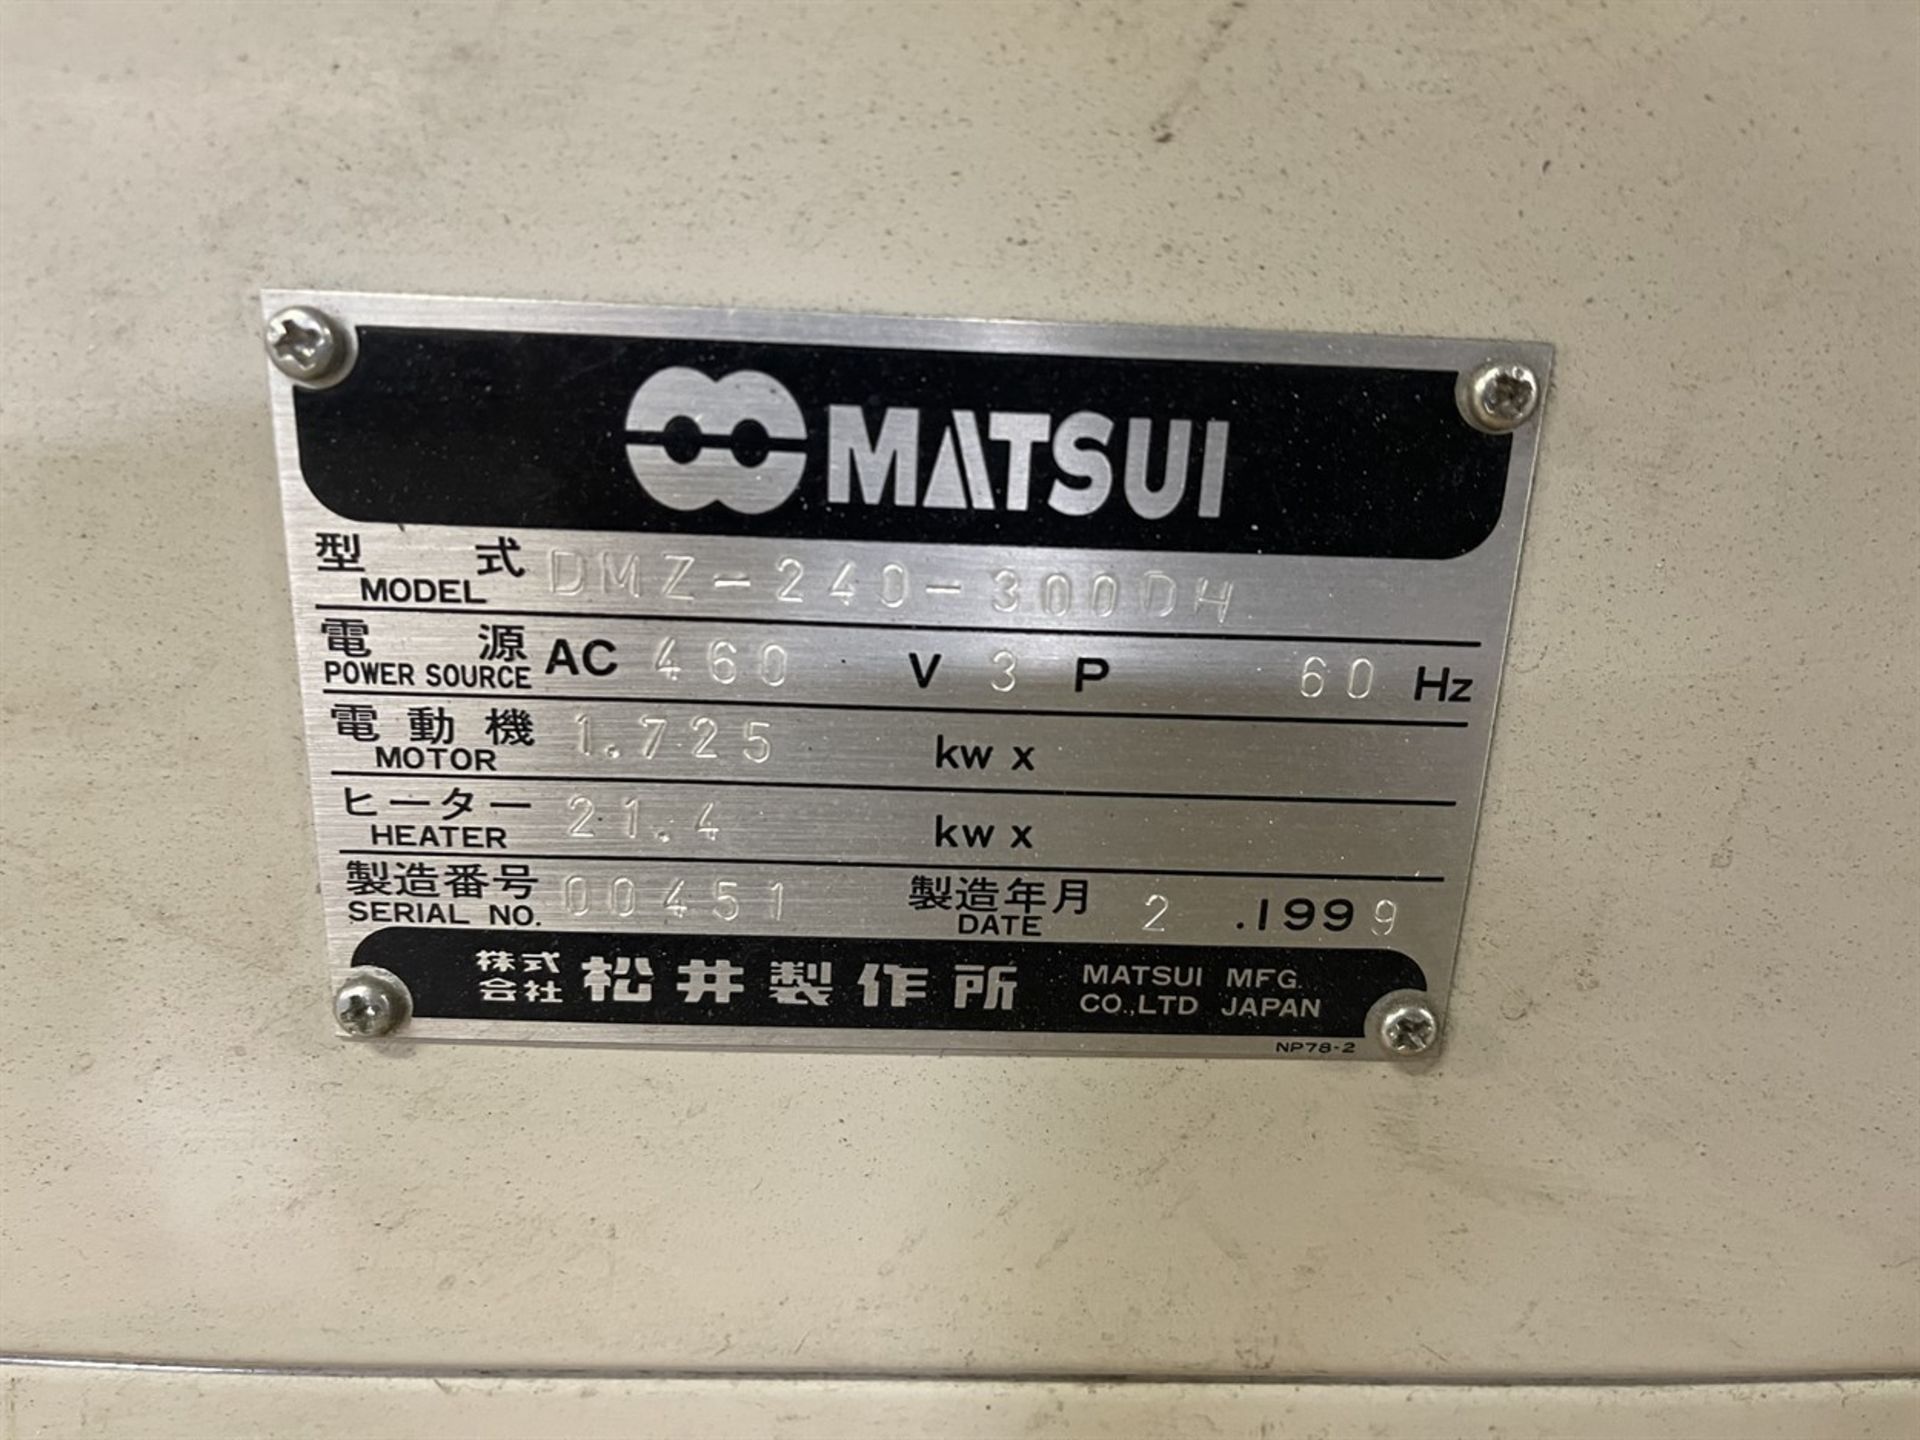 MATSUI DMZ-240-300DH Portable Hopper Dryer, s/n 00451 - Image 5 of 6